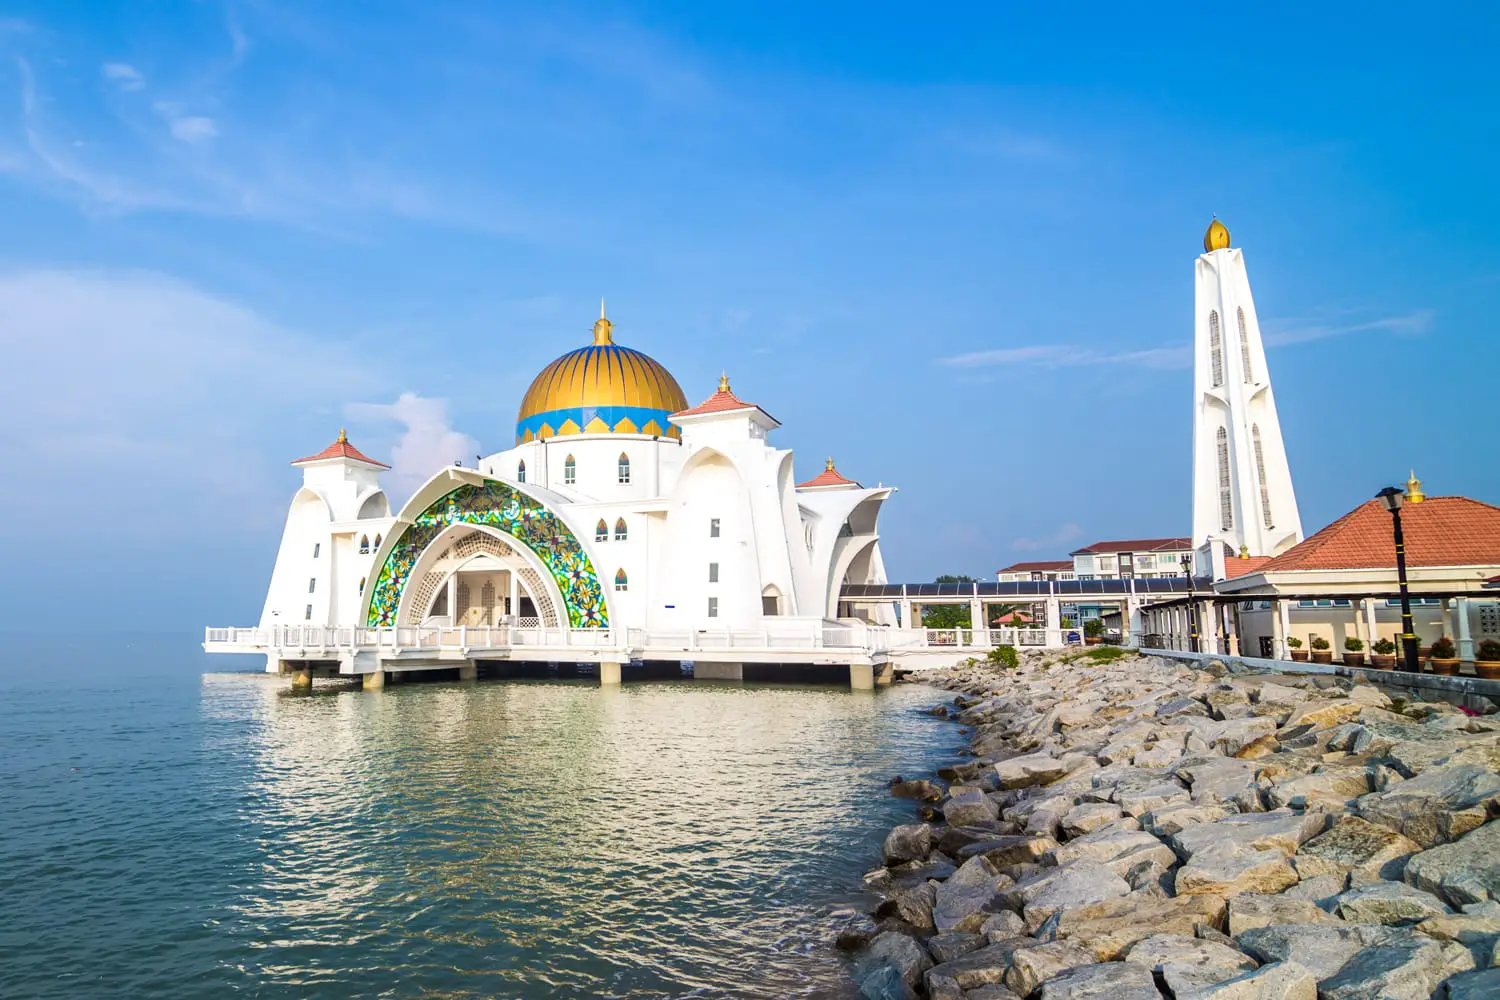 Τζαμί Malacca Straits (Masjid Selat Melaka) που βρίσκεται στο τεχνητό νησί Malacca κοντά στην πόλη Malacca, Μαλαισία